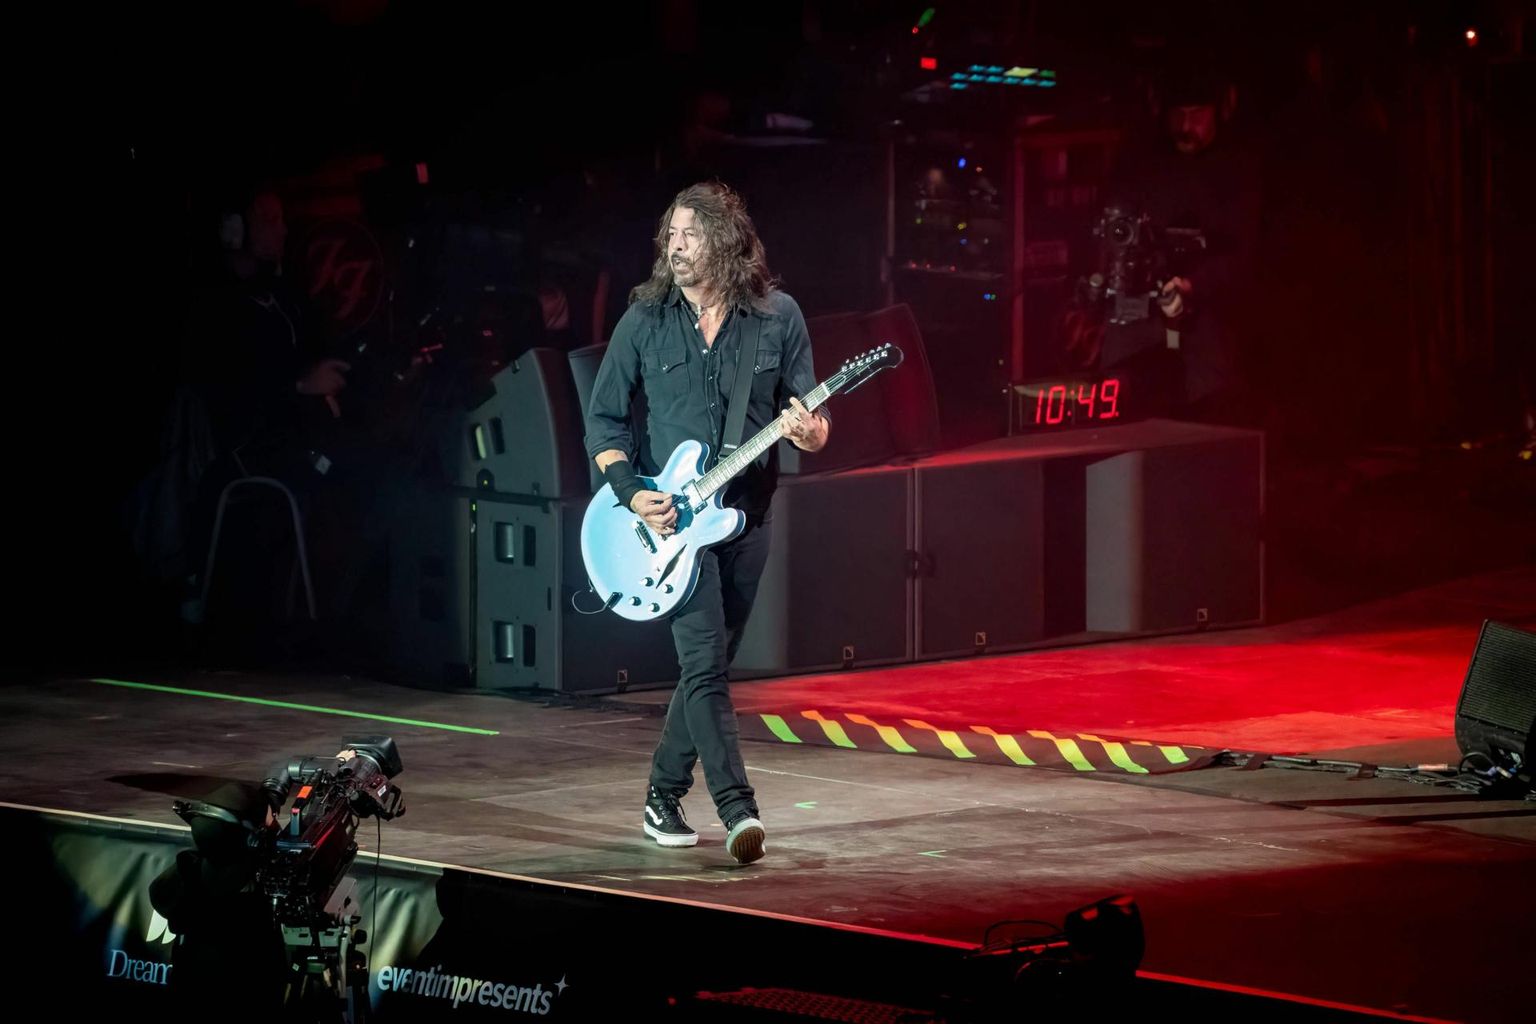 Juuni algul peetud Nürnbergi festivalil Rock am Ring astus Dave Grohl koos Foo Fightersiga 150 000-pealise publiku ette.